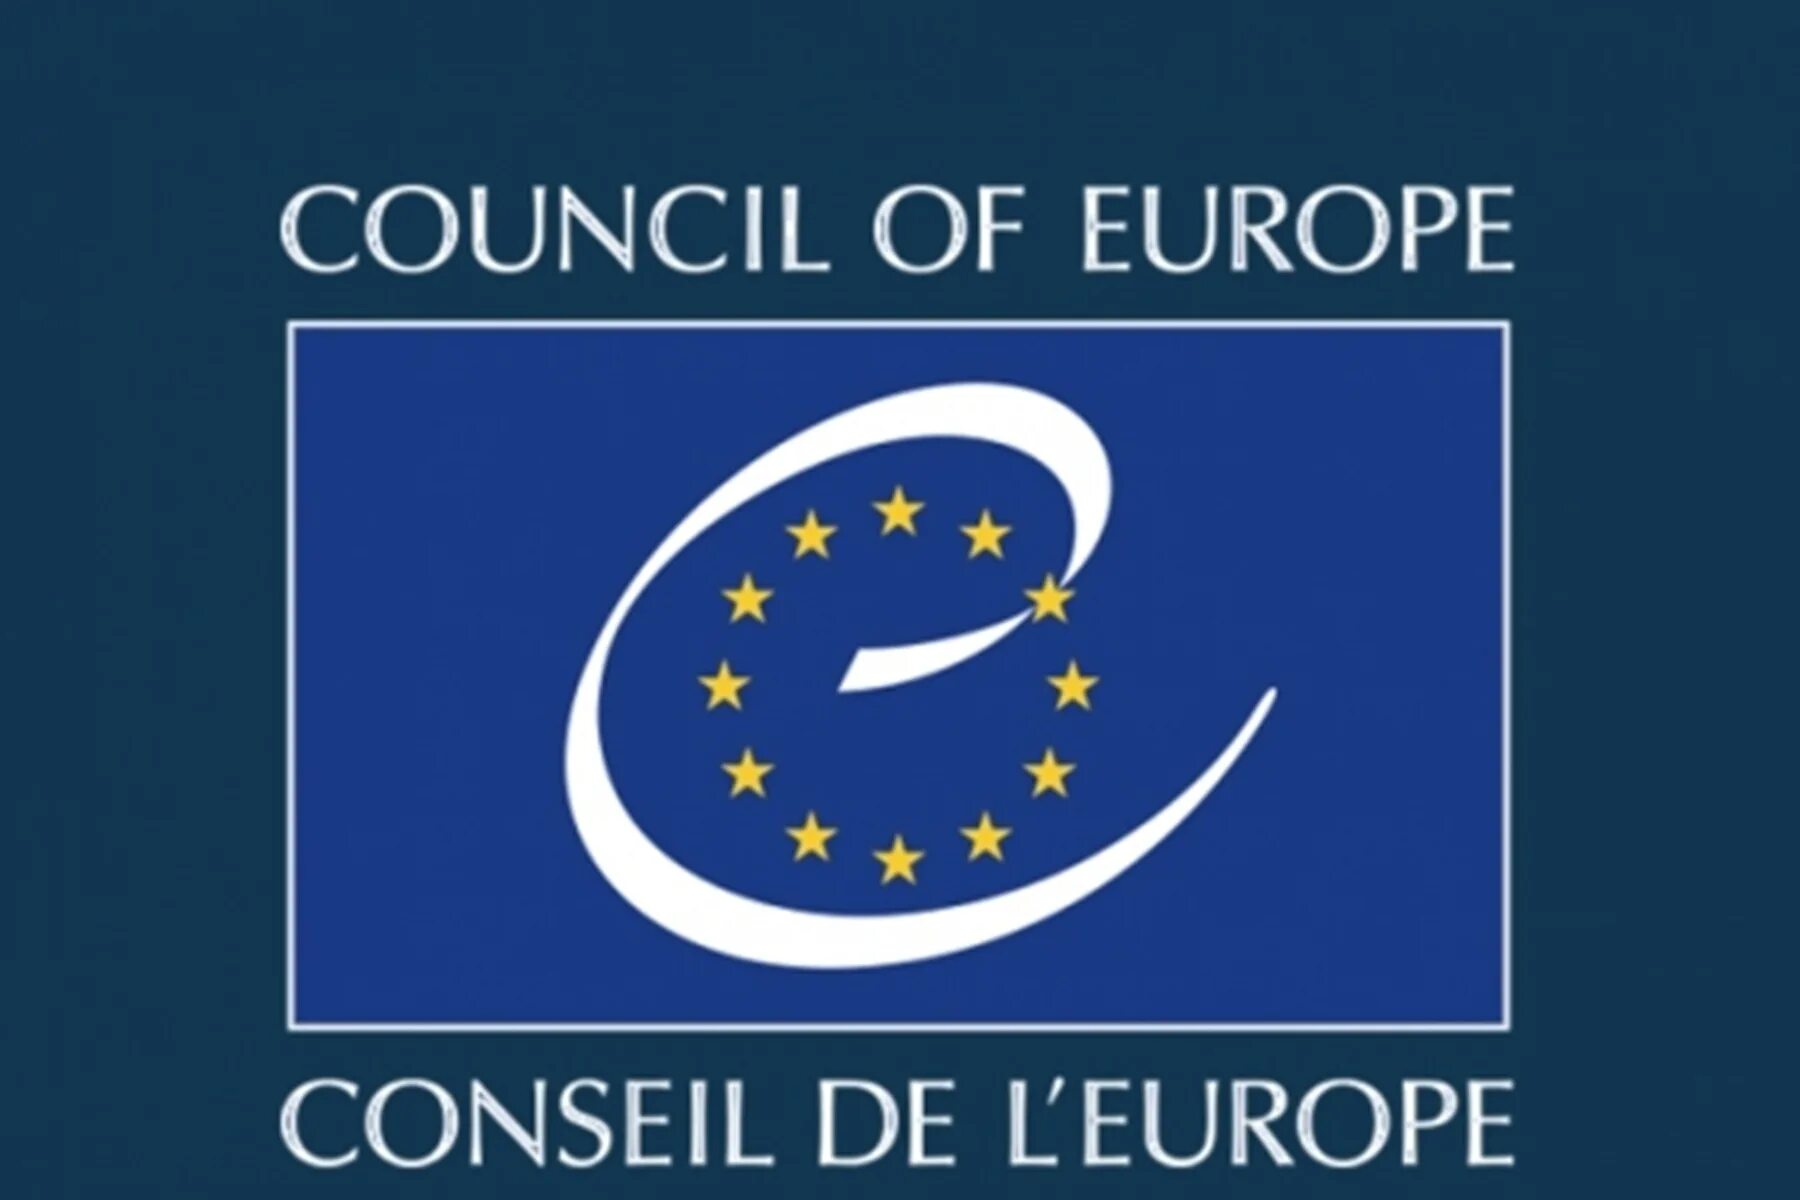 Eu council. Совет Европы эмблема. Совет Европы (Council of Europe). Европейский совет и совет Европы. Совет Европы 1996.